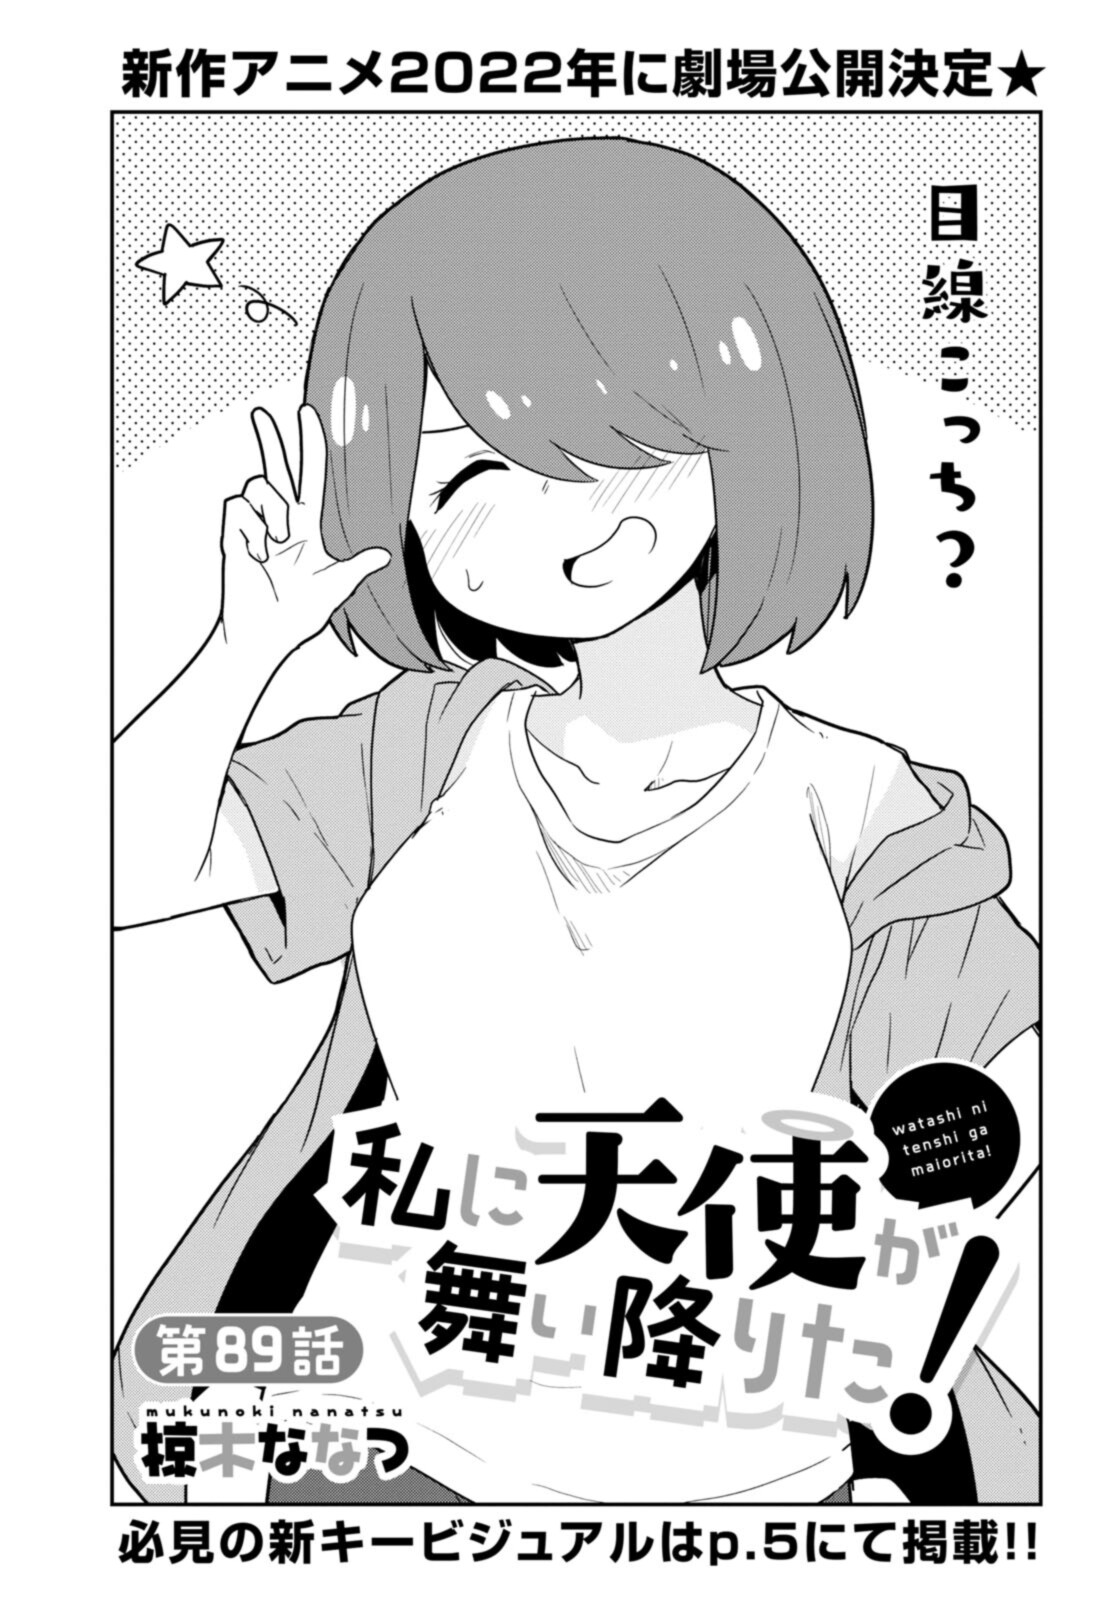 Watashi ni Tenshi ga Maiorita! - Chapter 89 - Page 1